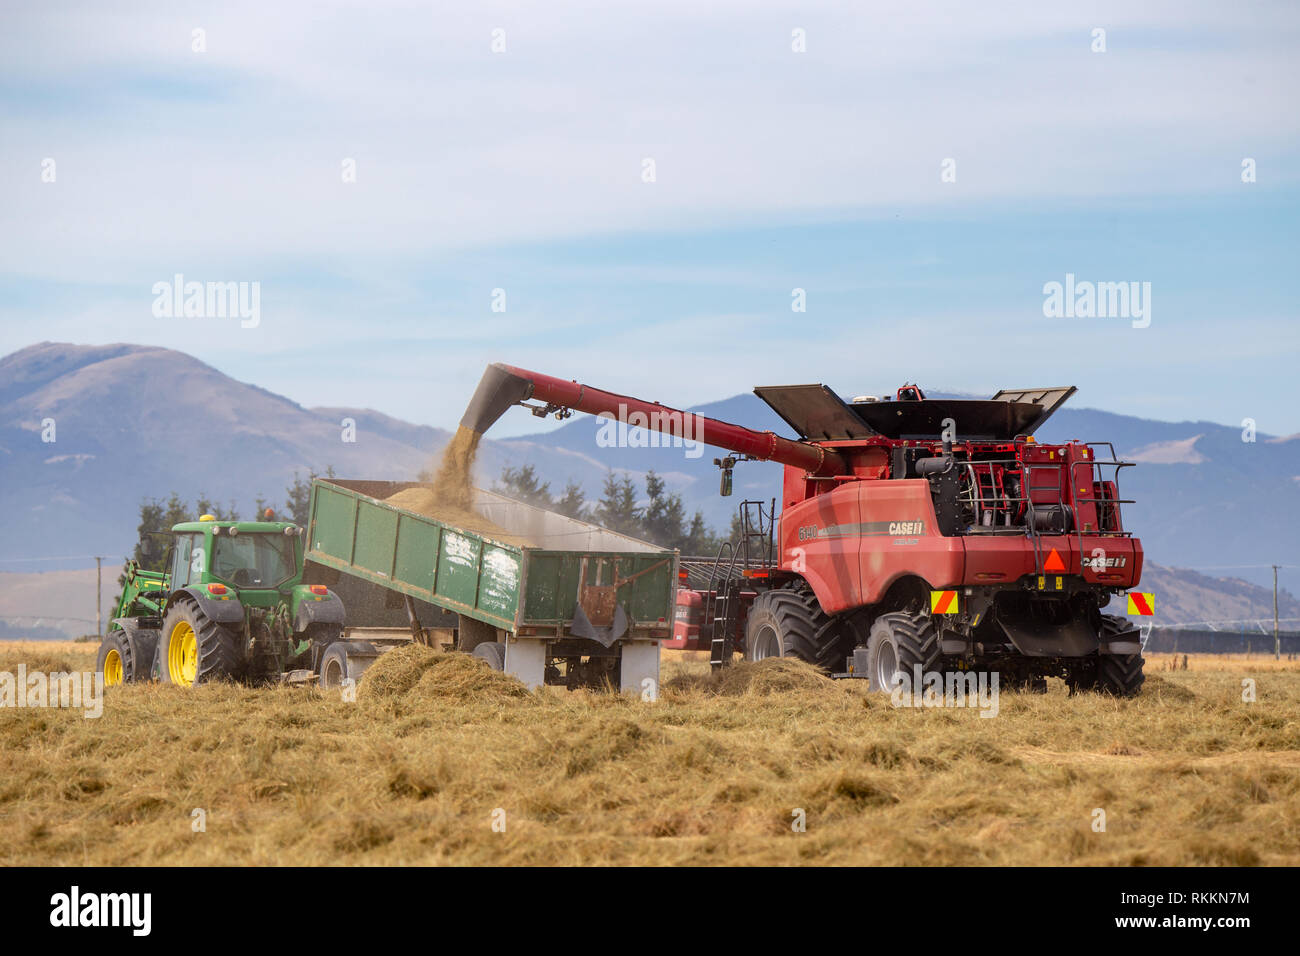 Annat, Canterbury, Neuseeland - 1. Februar 2019: EIN CASE Feldhäcksler entlädt Gras Samen in ein Fach von einem John Deere Traktor gezogenen Mähdrescher Stockfoto